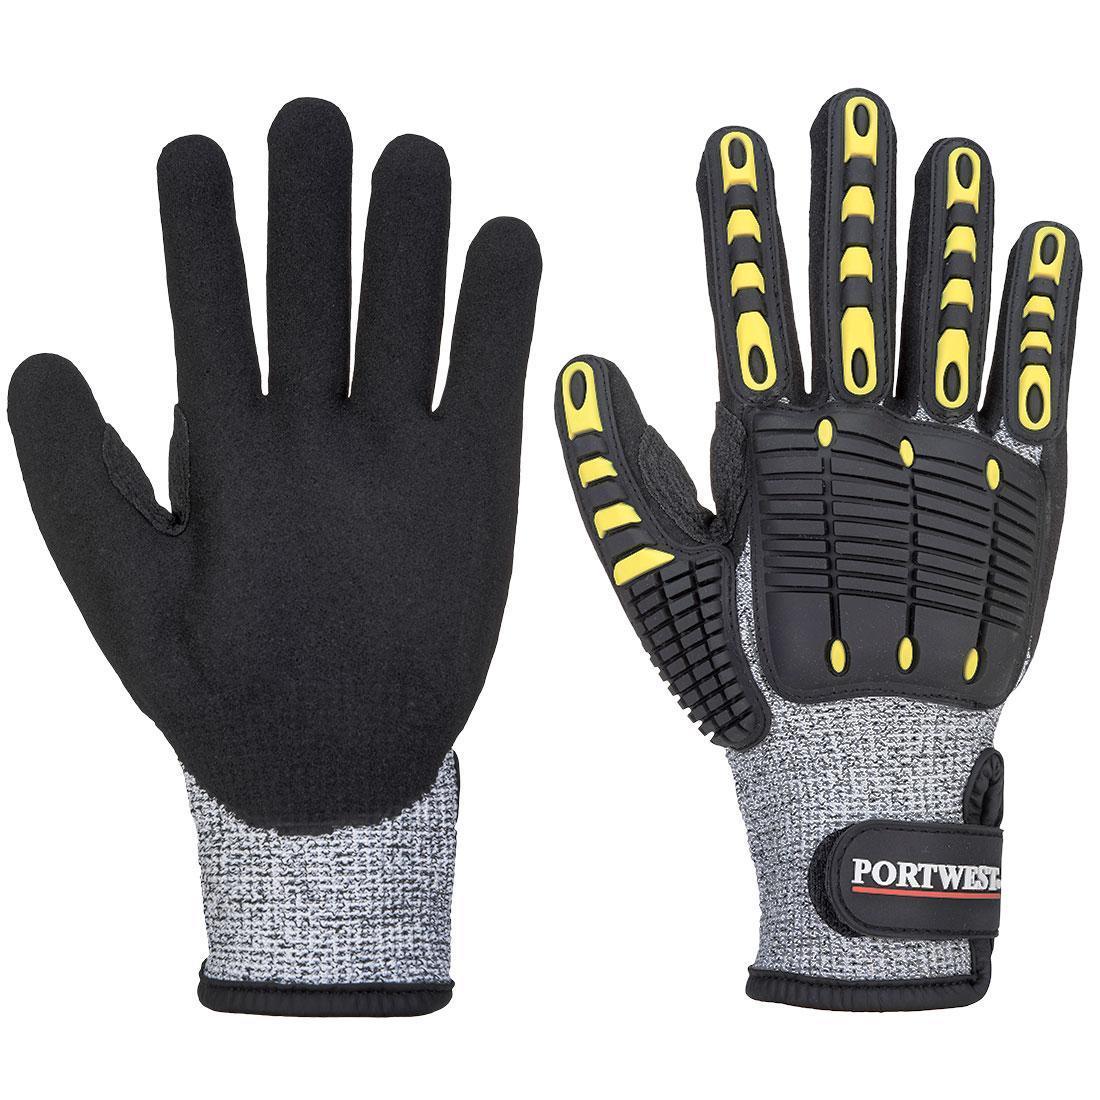 Portwest Unisex Adult A772 Impact Resistant Cut Resistant Glove (Grey/Black) (XXL)